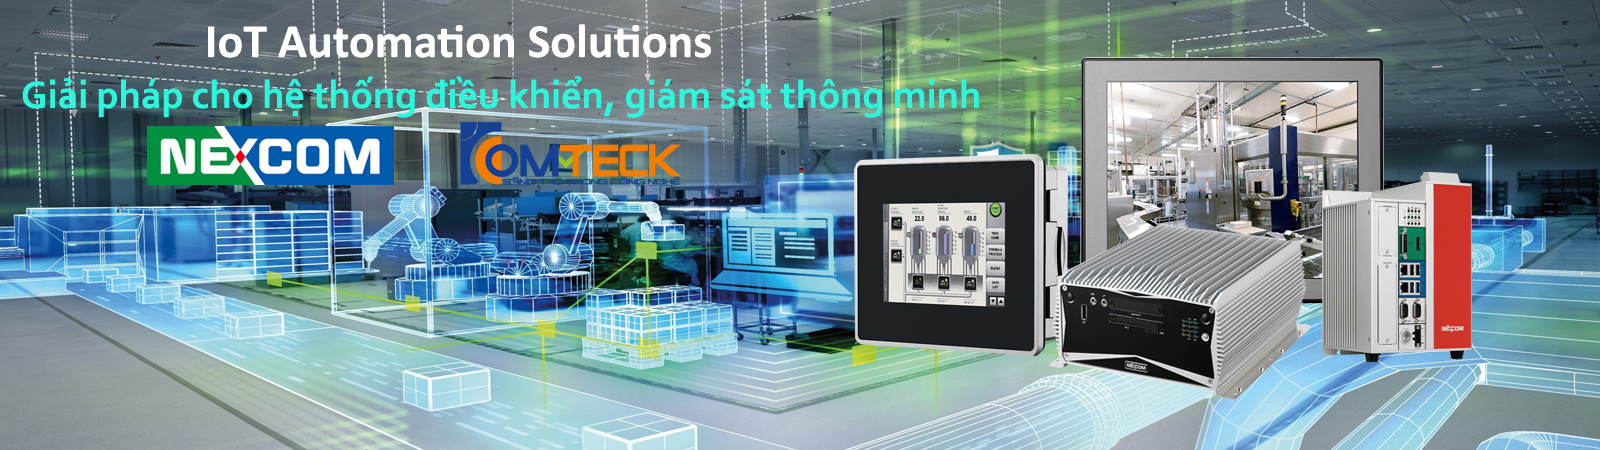 IoT Automation Solutions - Giải pháp cho hệ thống điều khiển, giám sát thông minh